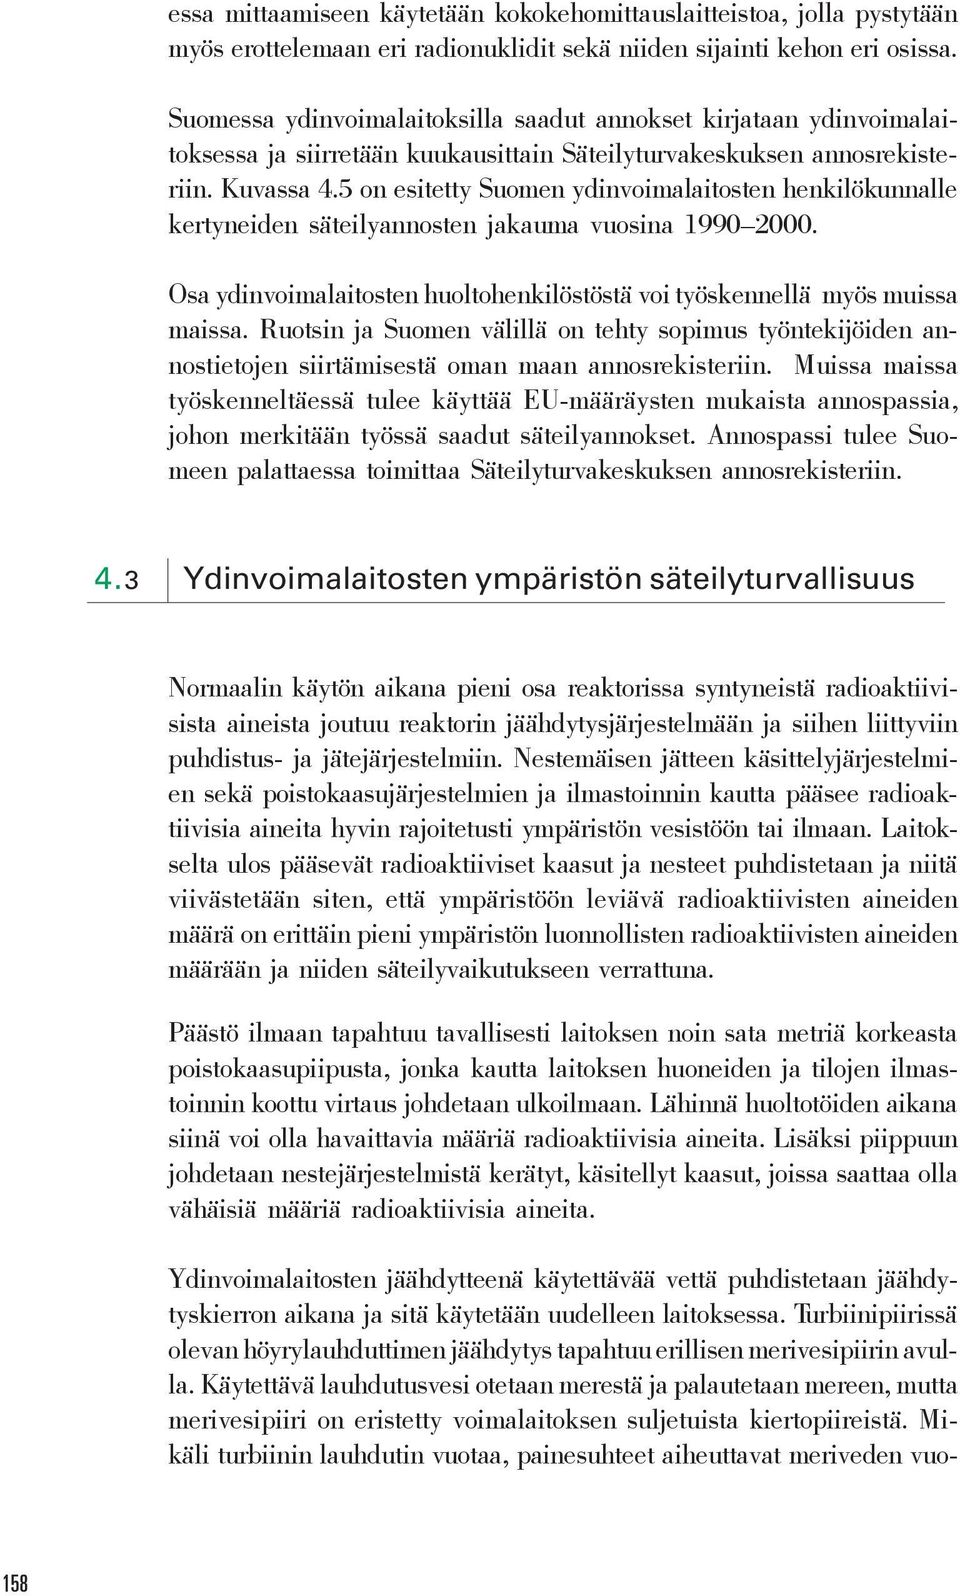 5 on esitetty Suomen ydinvoimalaitosten henkilökunnalle kertyneiden säteilyannosten jakauma vuosina 1990 2000. Osa ydinvoimalaitosten huoltohenkilöstöstä voi työskennellä myös muissa maissa.